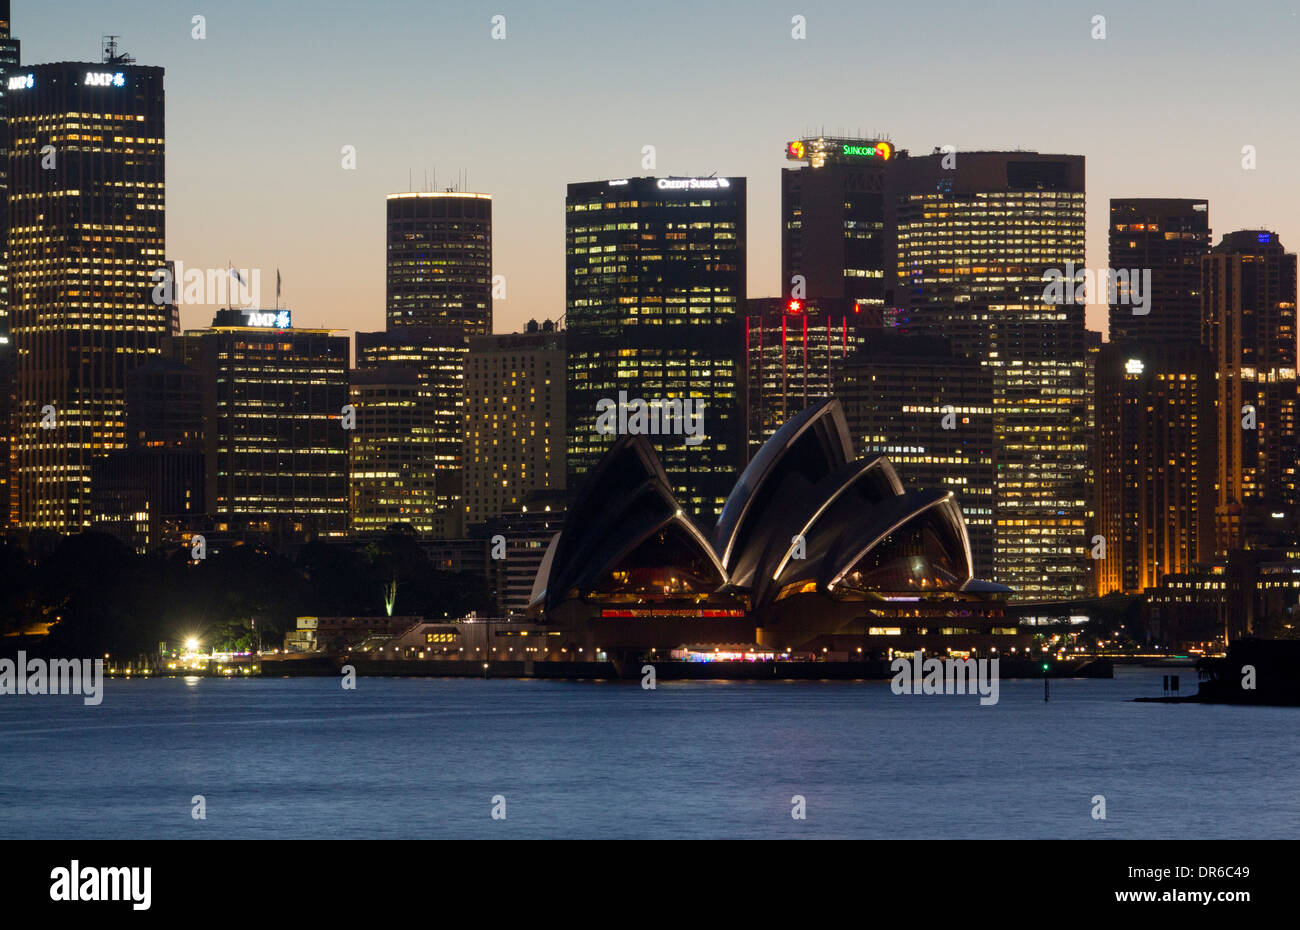 Opéra de Sydney et les toits de CBD au coucher du soleil nuit de Cremorne Point Sydney NSW Australie Nouvelle Galles du Sud Banque D'Images